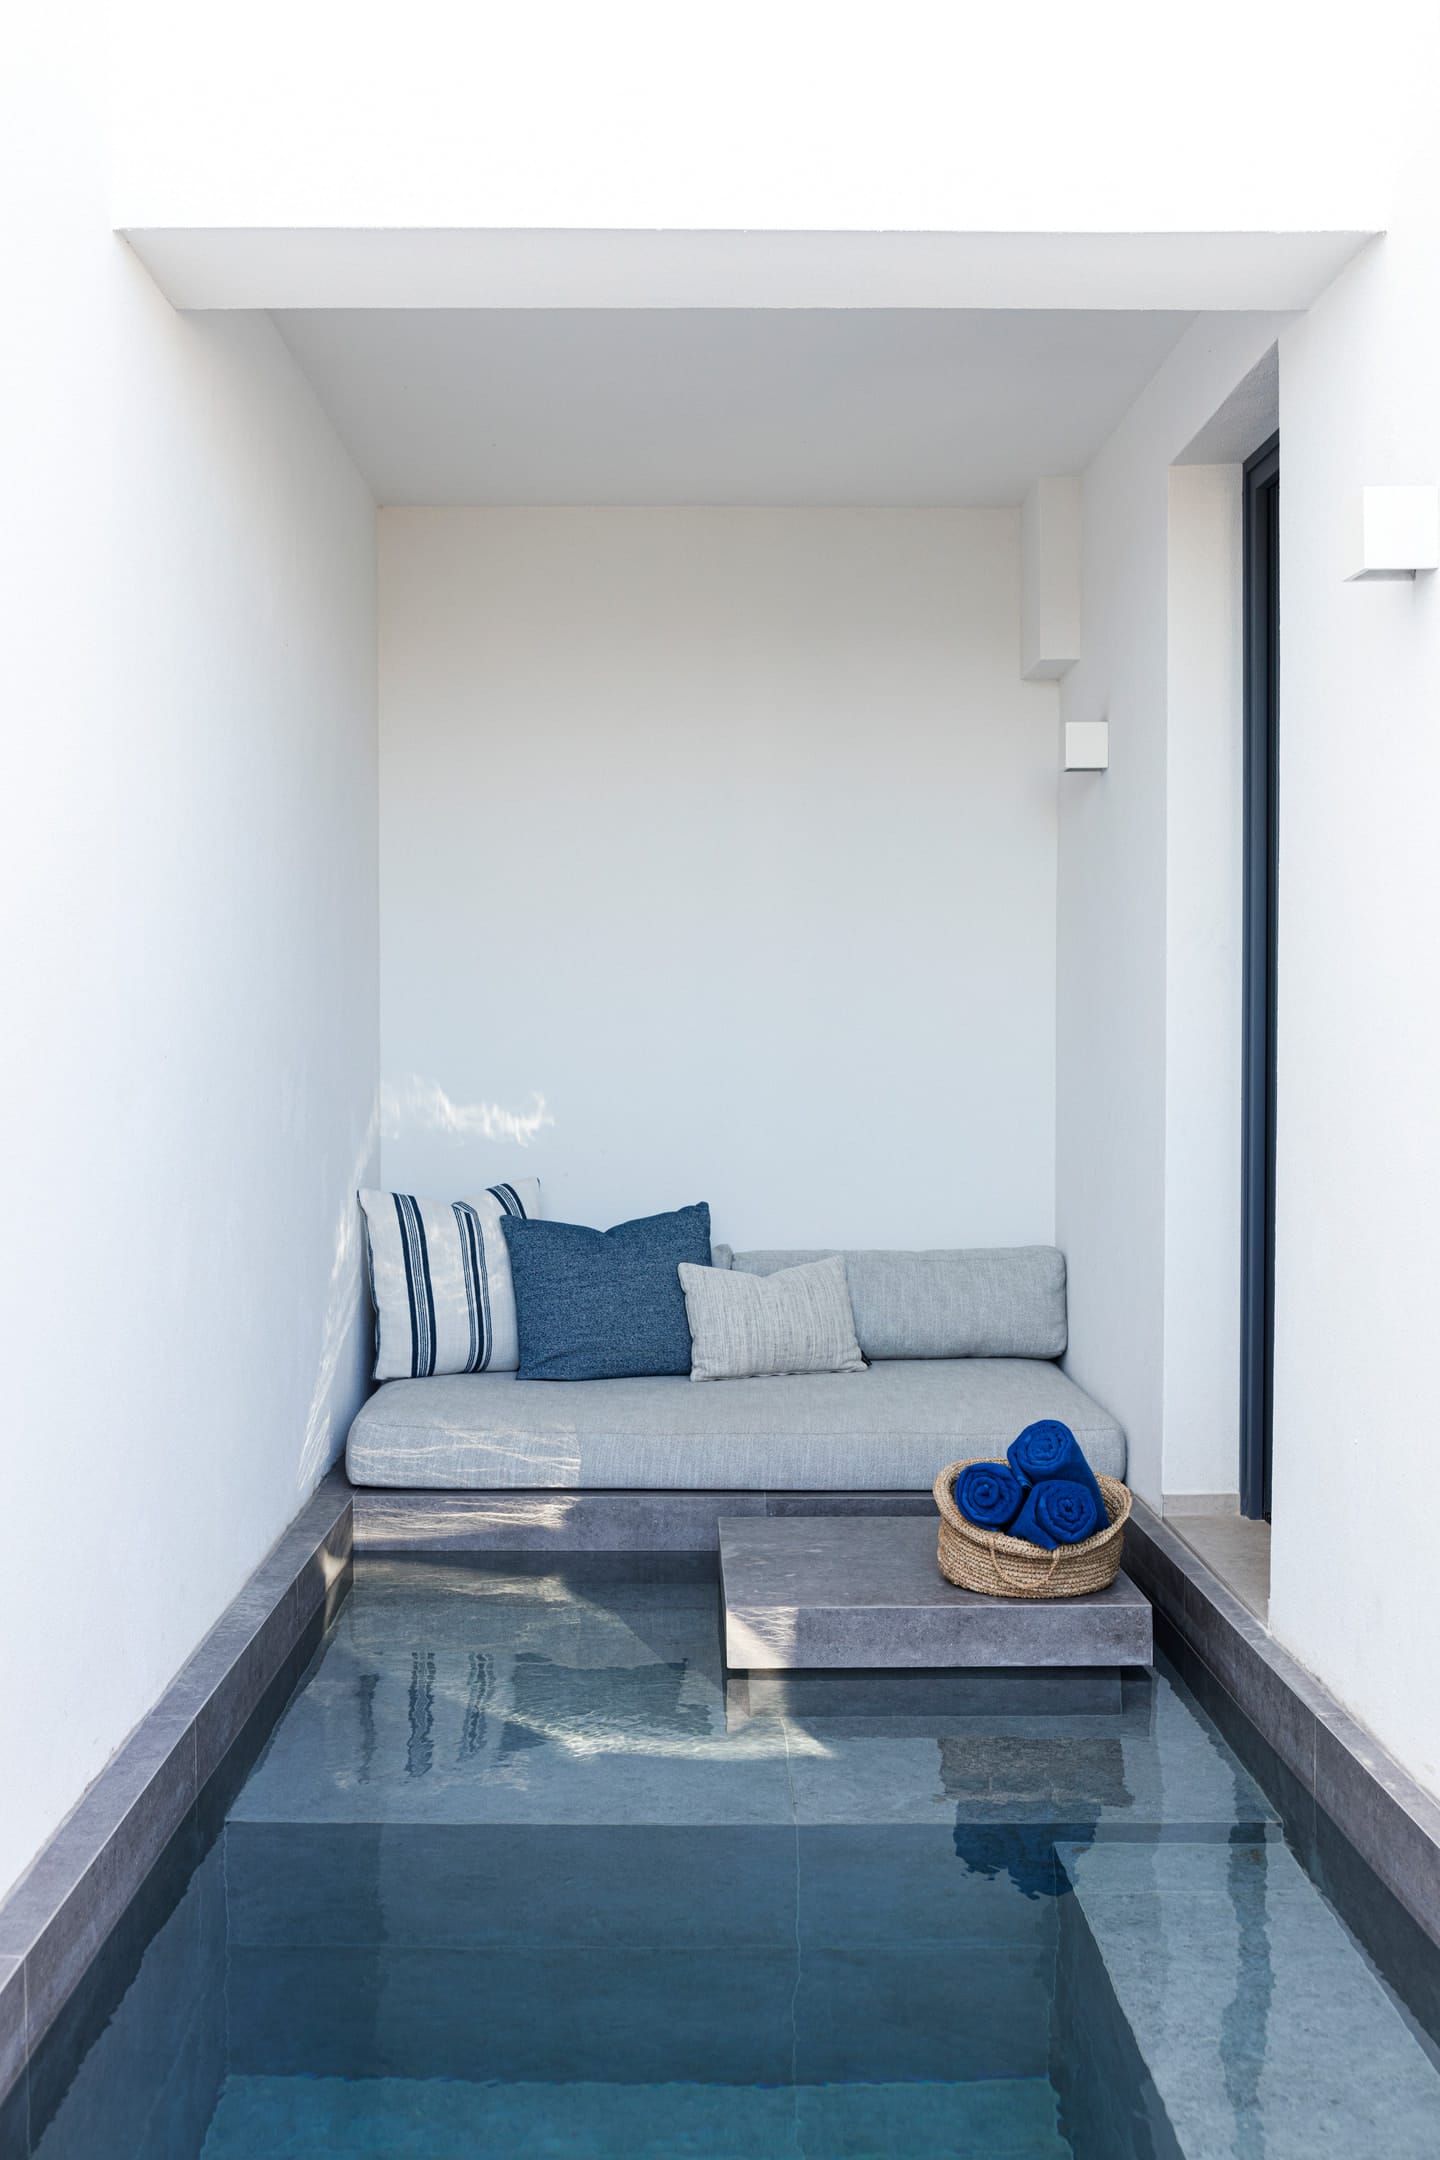 Phos, Milos - Junior Suite with Private Pool